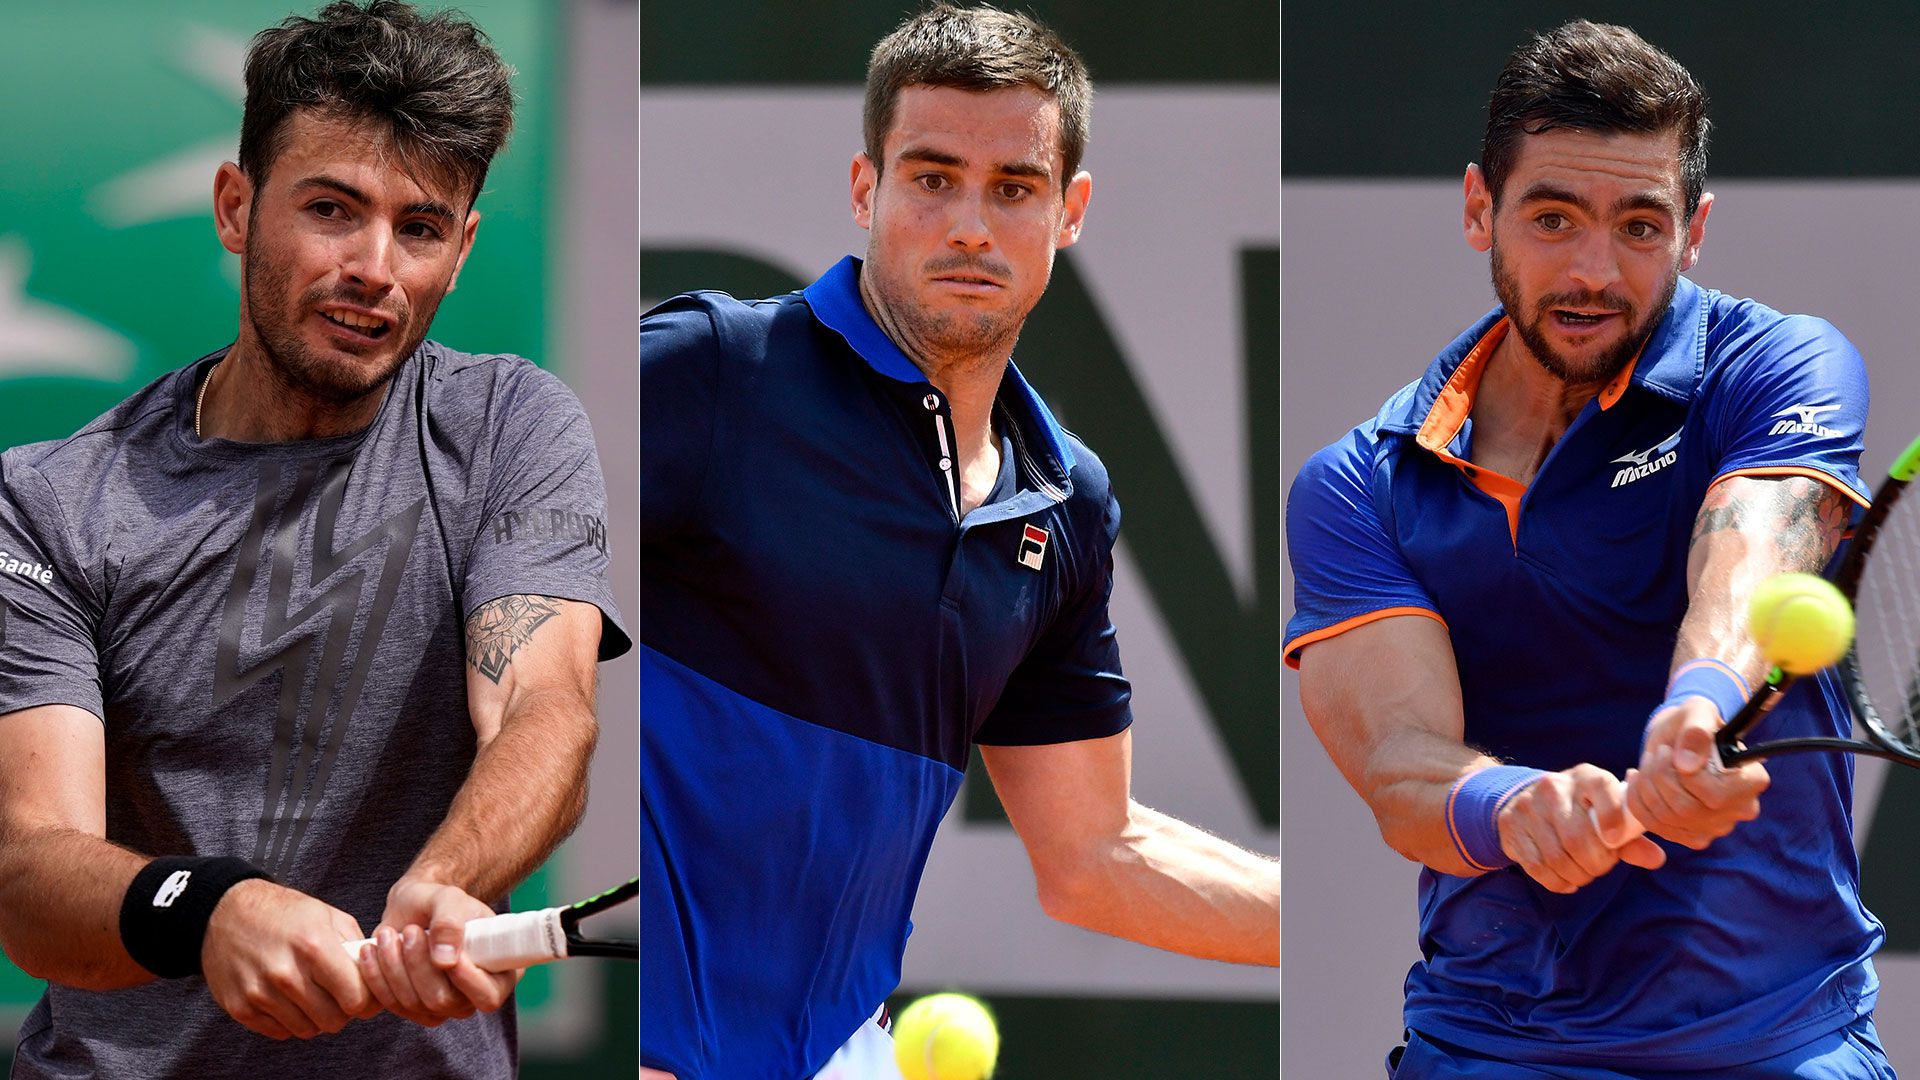 Lóndero, Pella y Andreozzi se presentaron en la segunda jornada de Roland Garros (EFE-AFP)